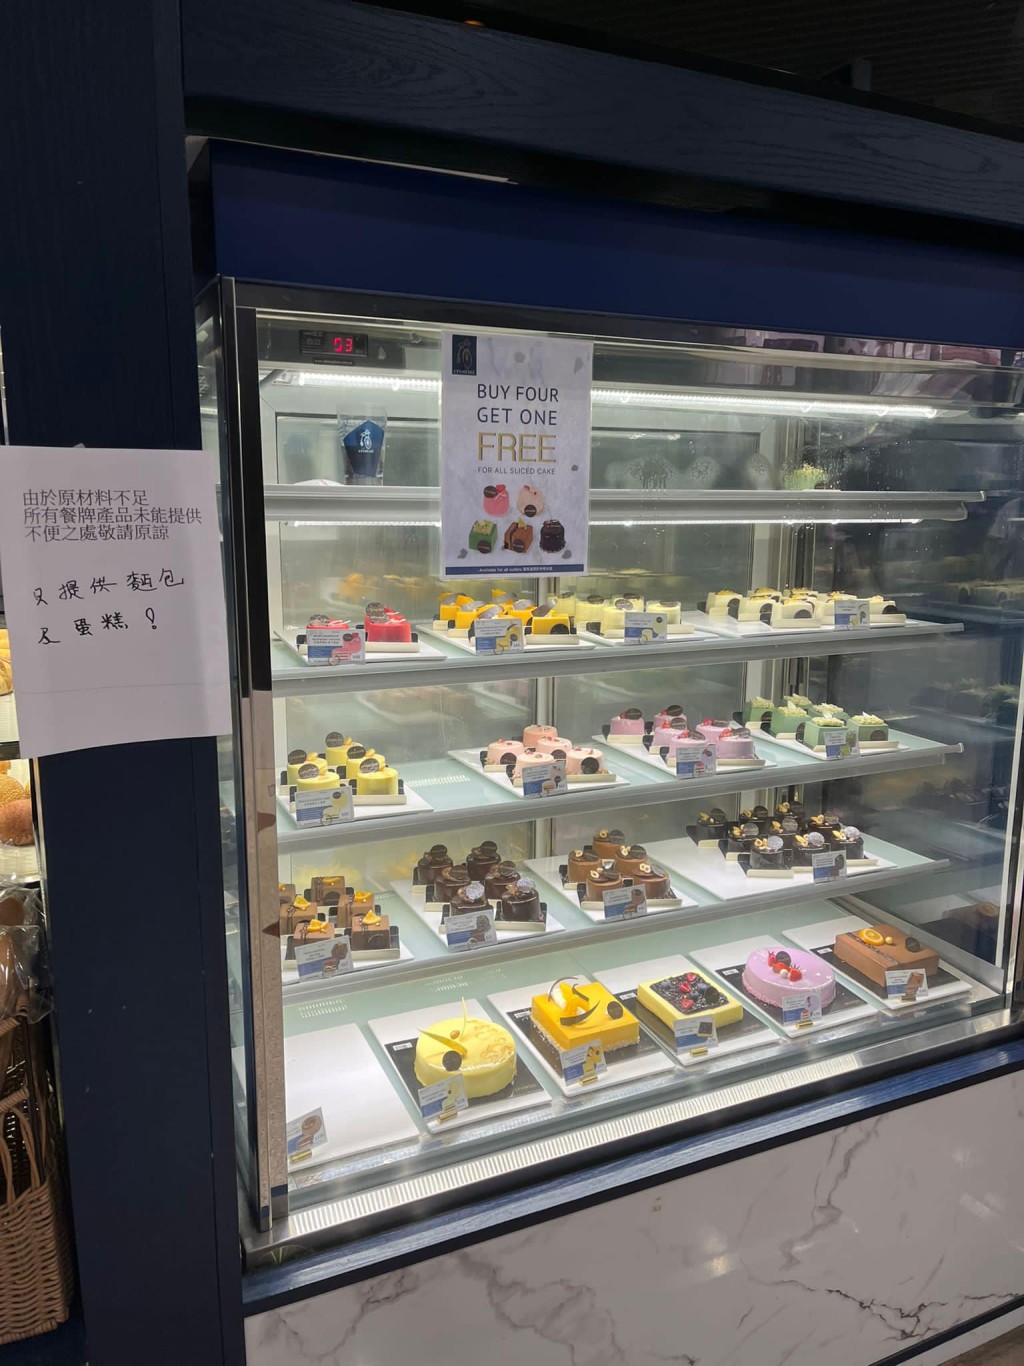 有顧客指，一周前被店員推銷，以500元購買一共24張咖啡券。「香港茶餐廳及美食關注組」FB